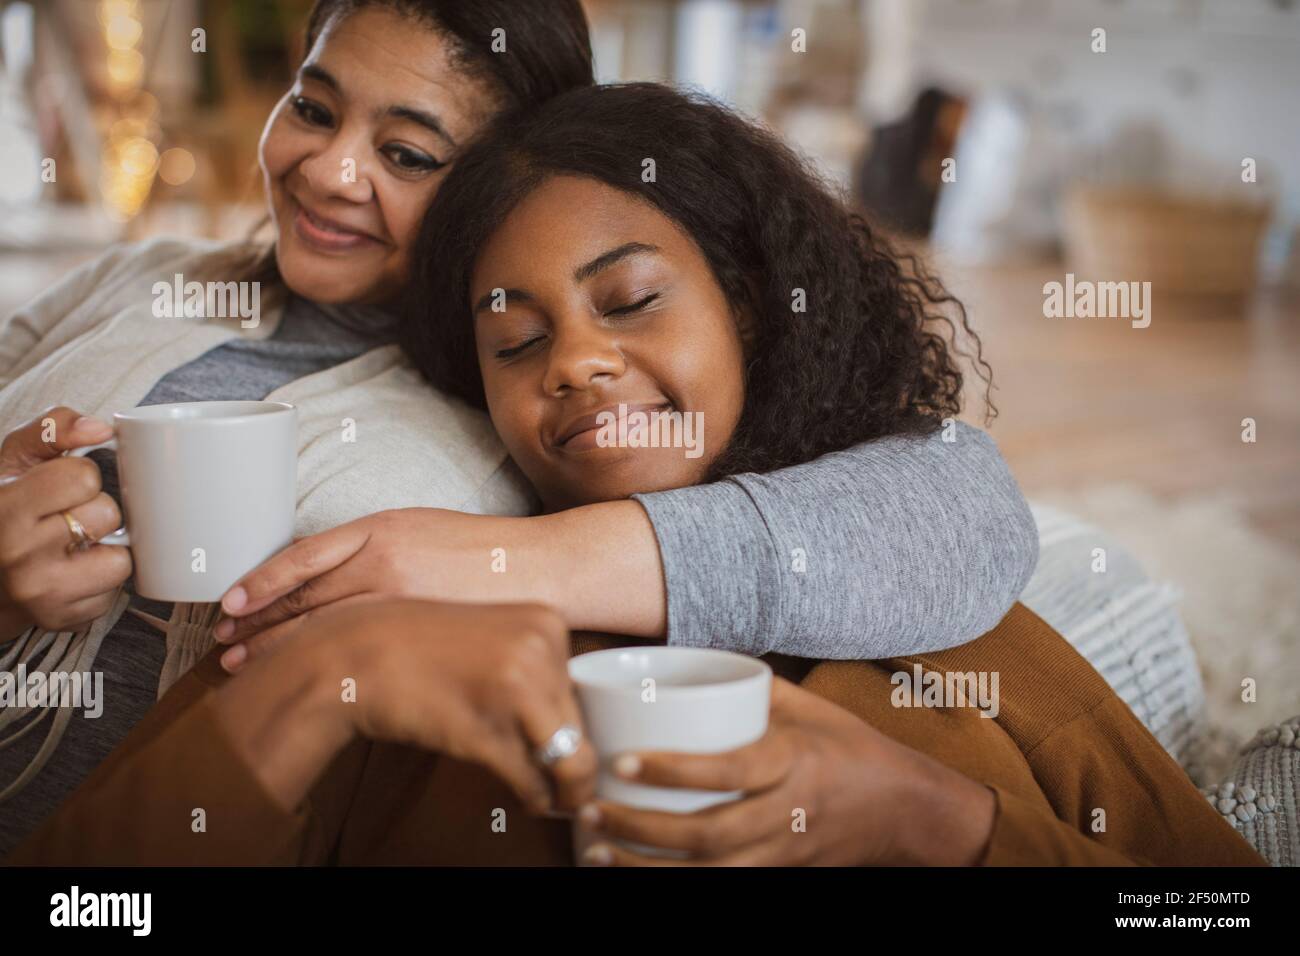 Une mère et une fille affectueuses qui se câline avec du thé Banque D'Images